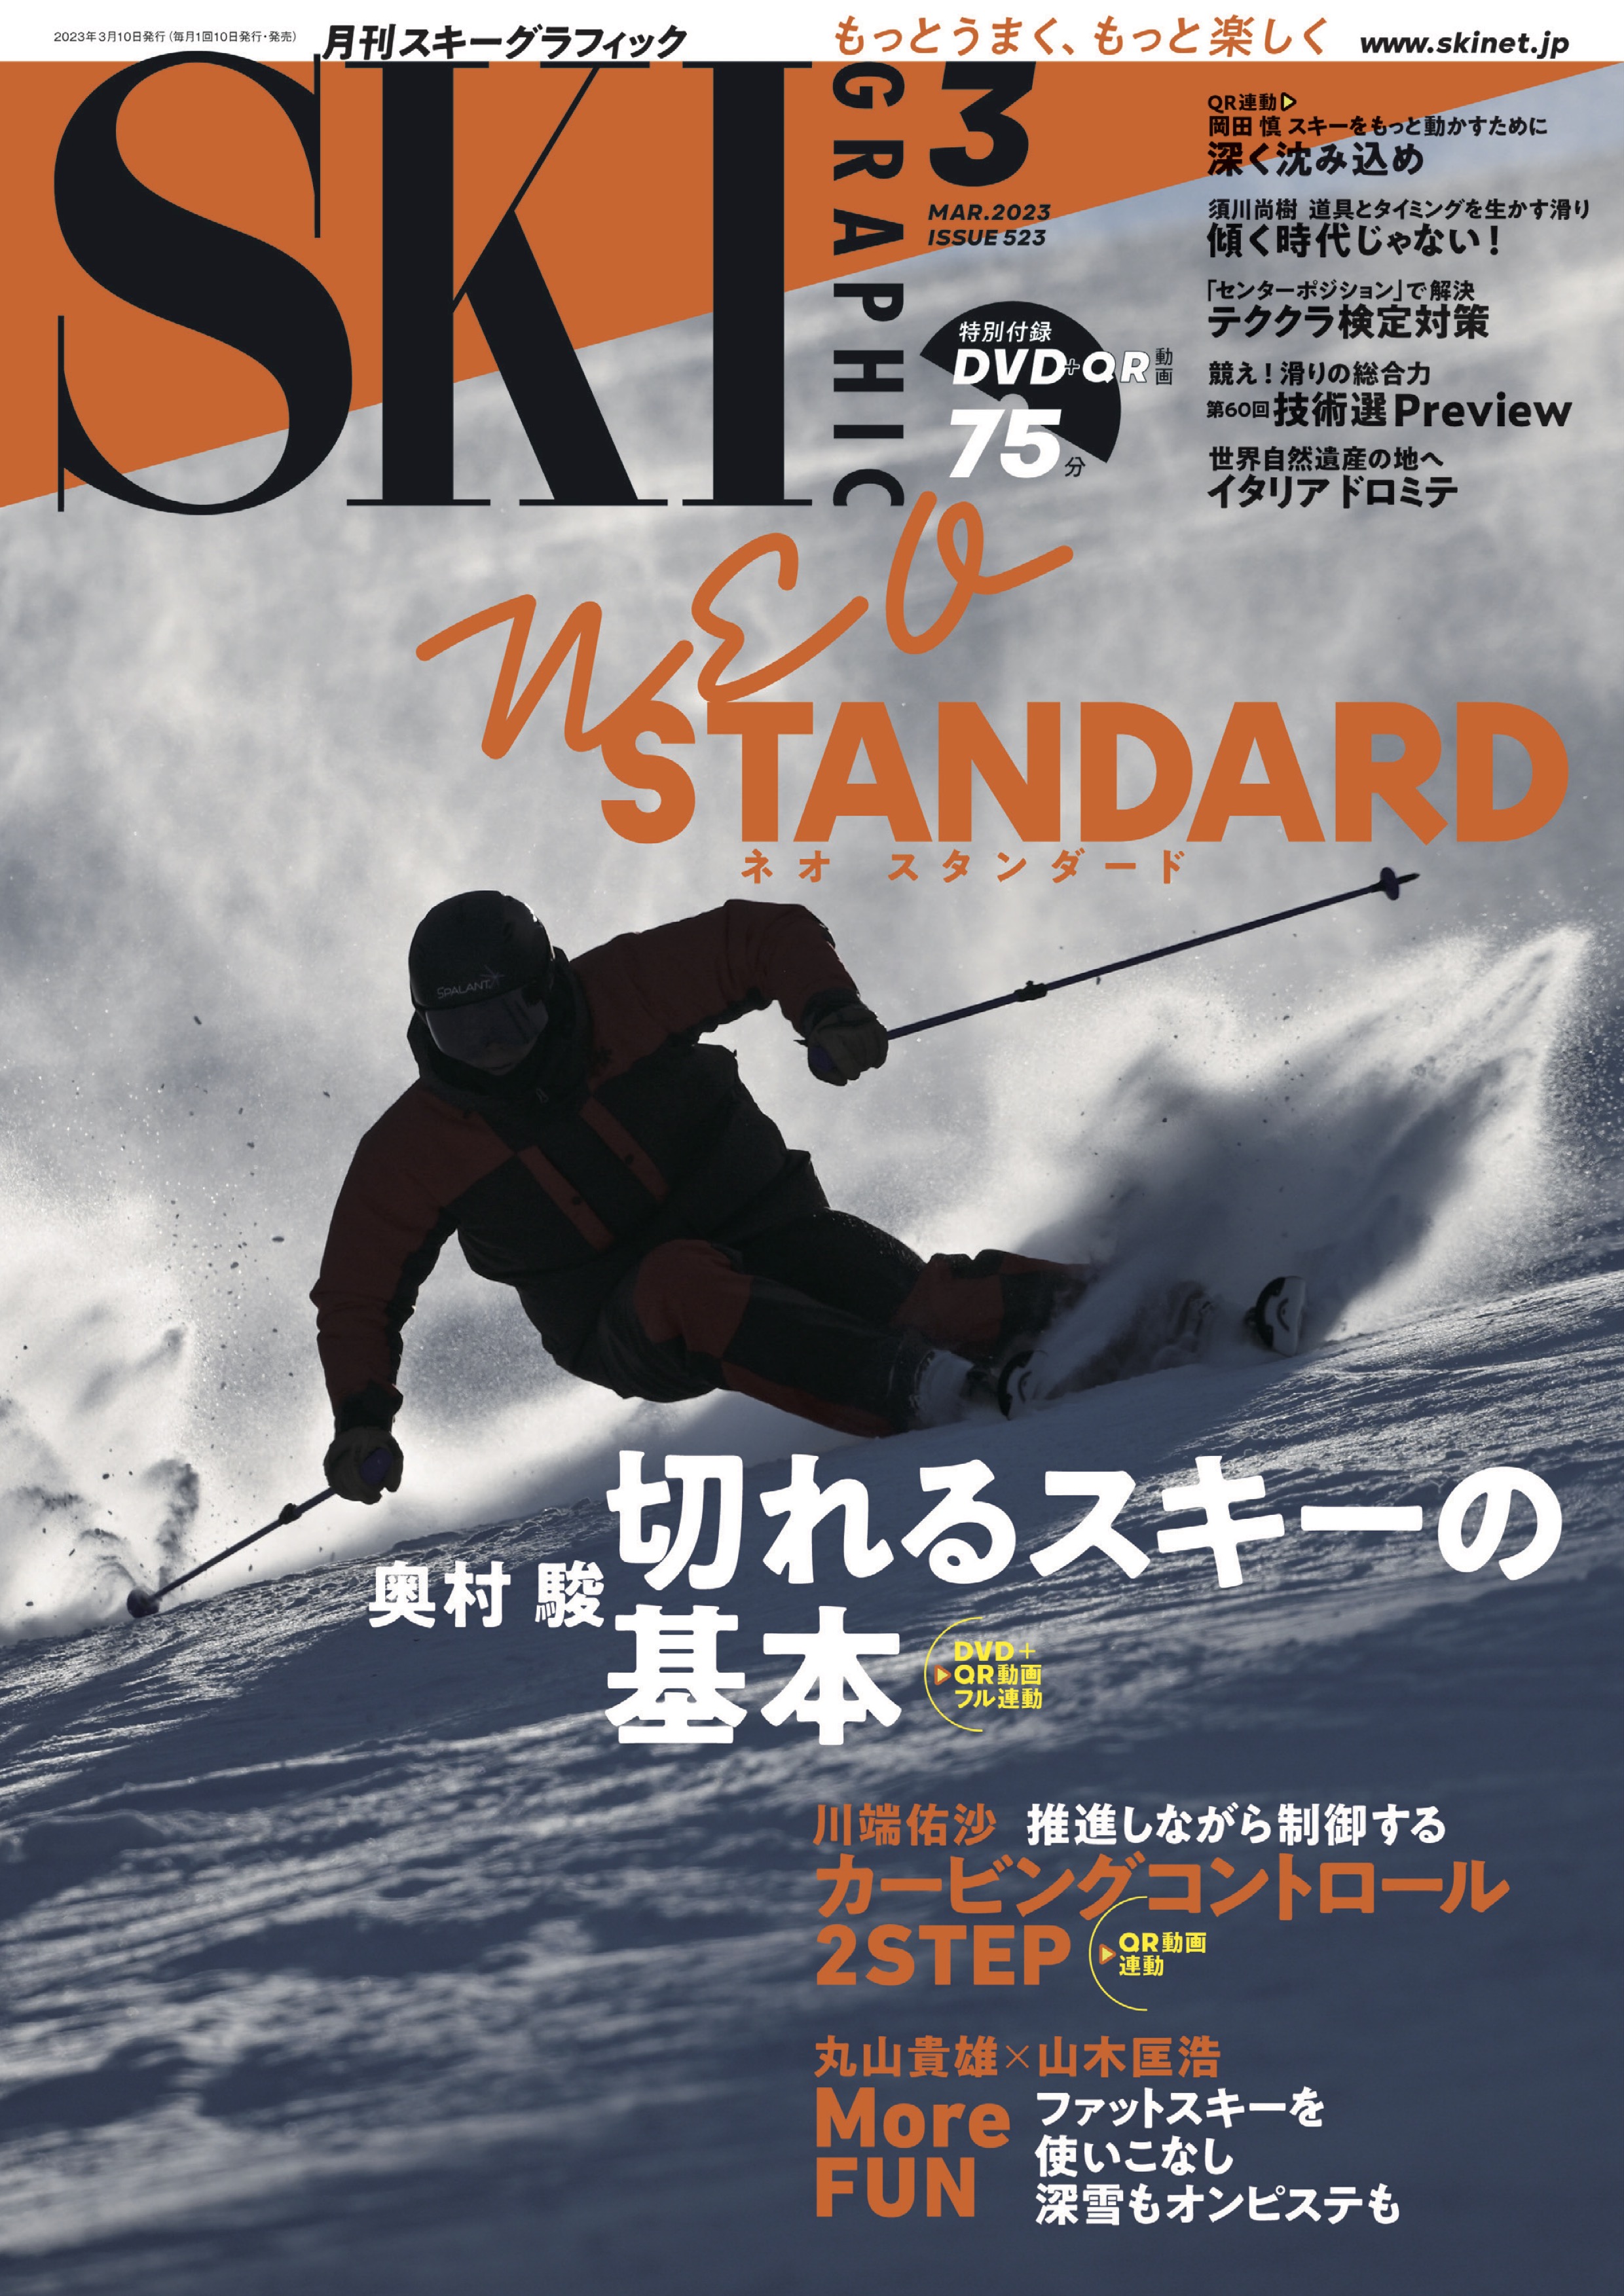 スキーグラフィックNo.523 - スキーグラフィック編集部 - 漫画・ラノベ